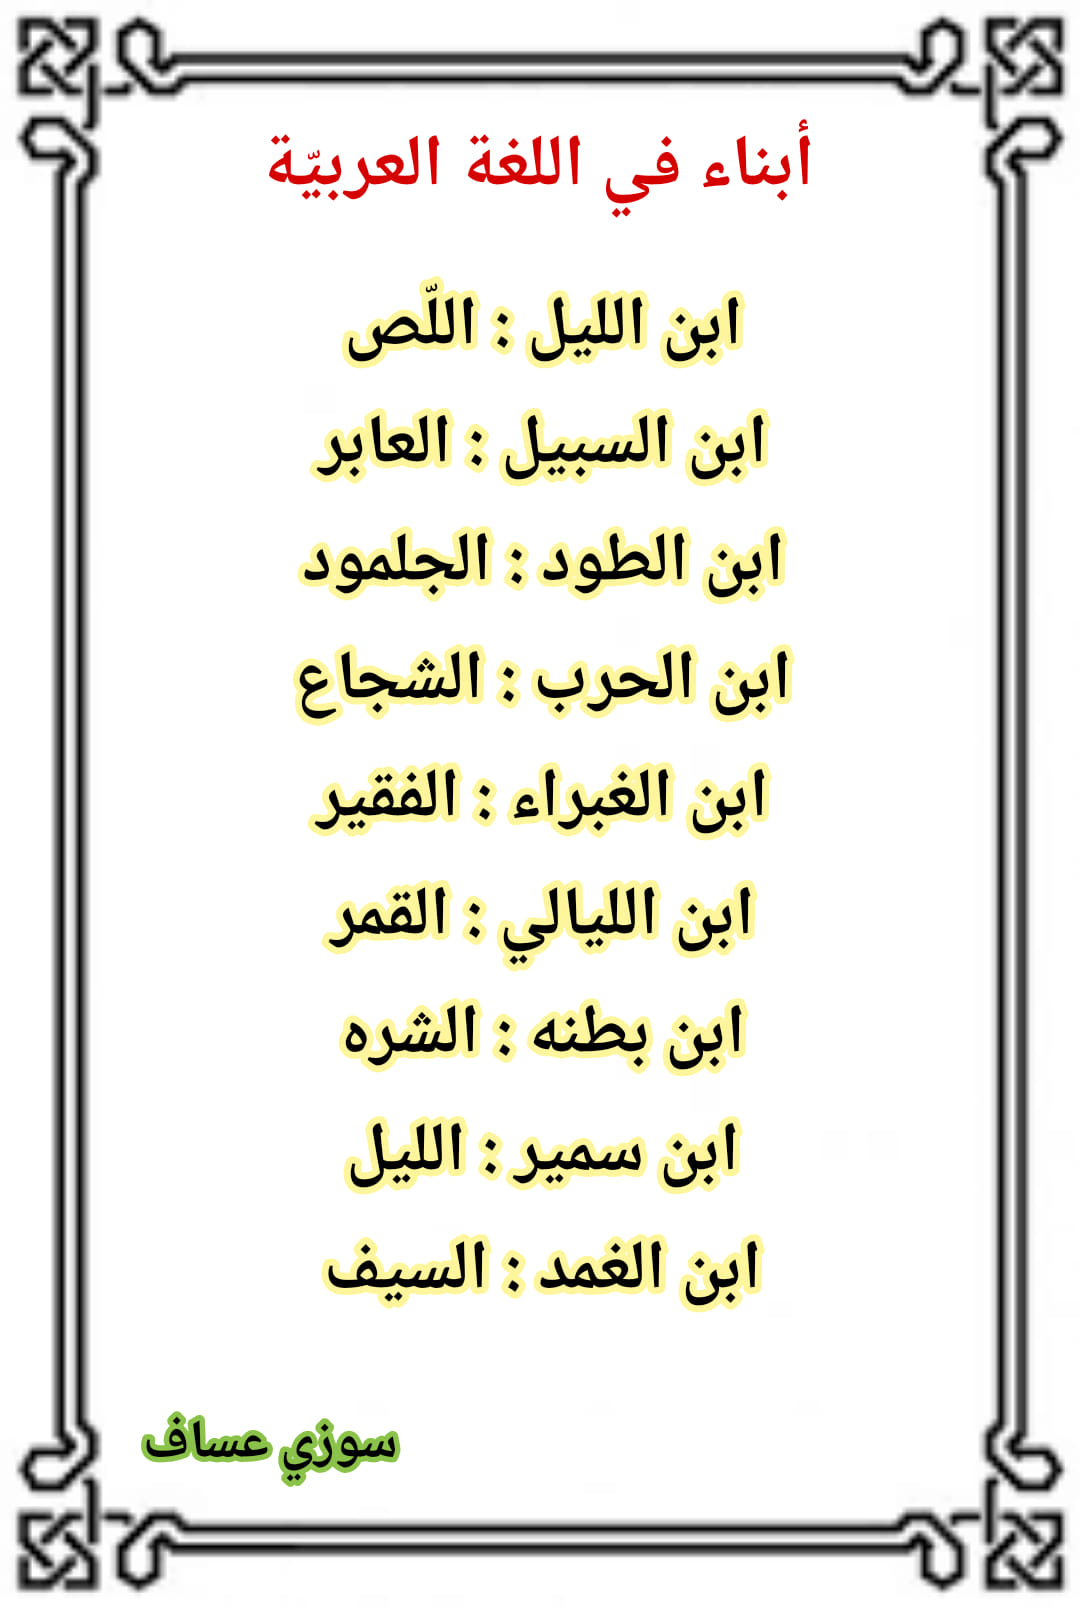 MTUwMTE2MC43MjQ3 اسماء اباء و امهات و ابناء ومعانيها في اللغة العربية معلومات جميلة بالصور